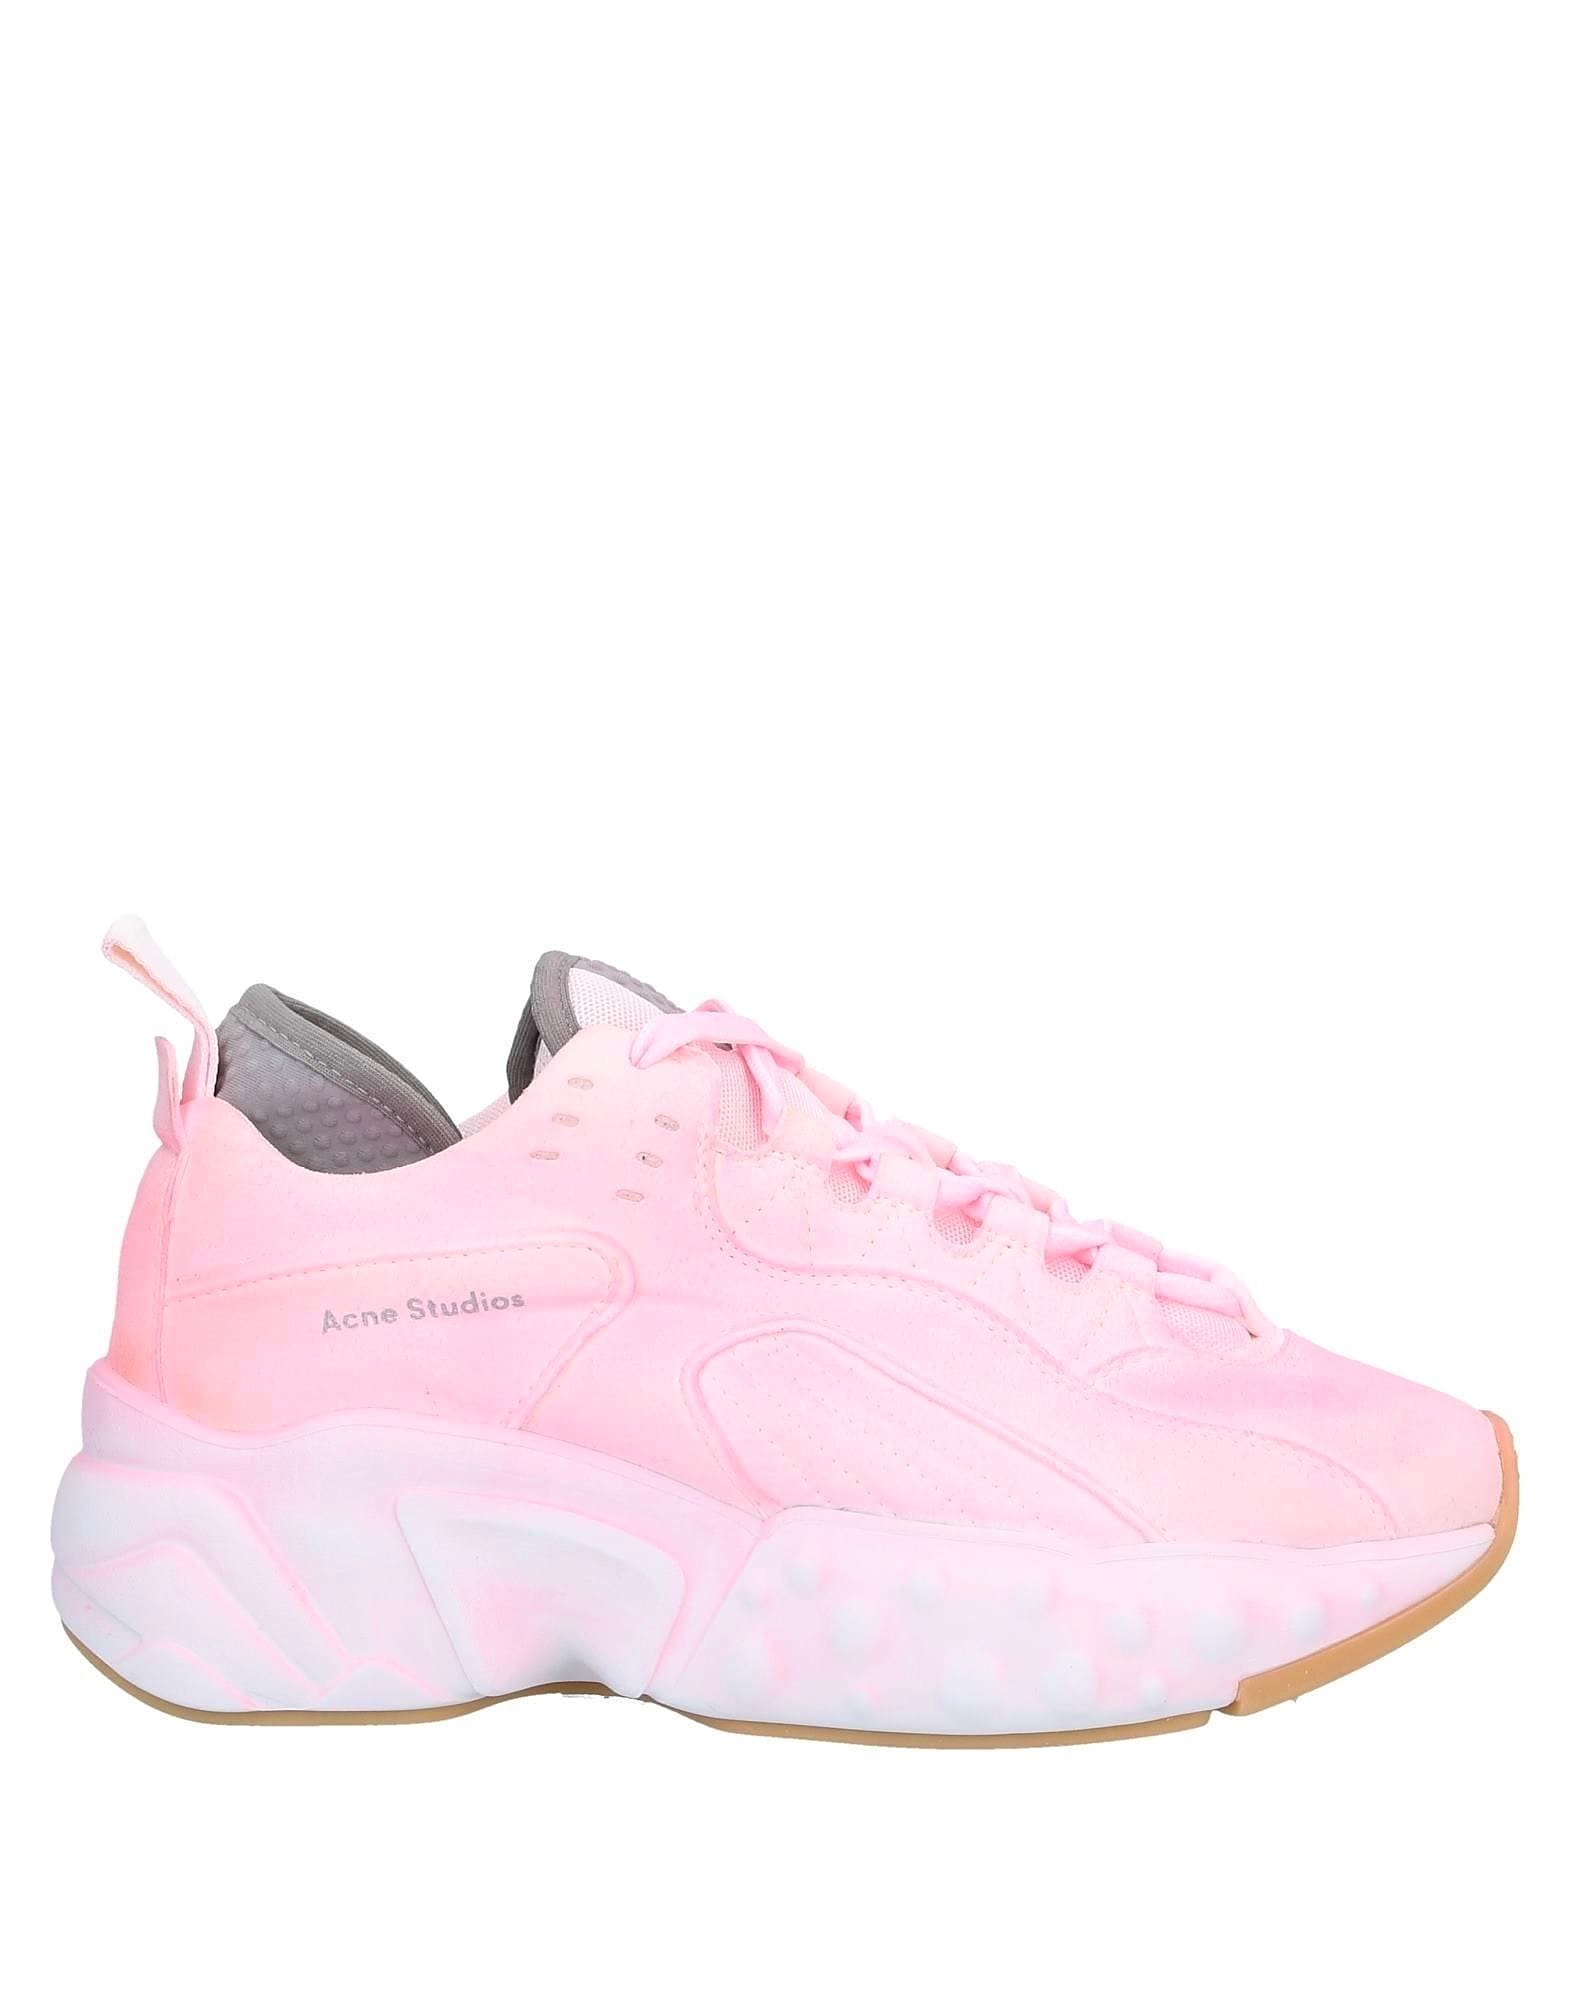 아크네 스튜디오 여성 로고 스니커즈 ACNE STUDIOS Pink Sneakers